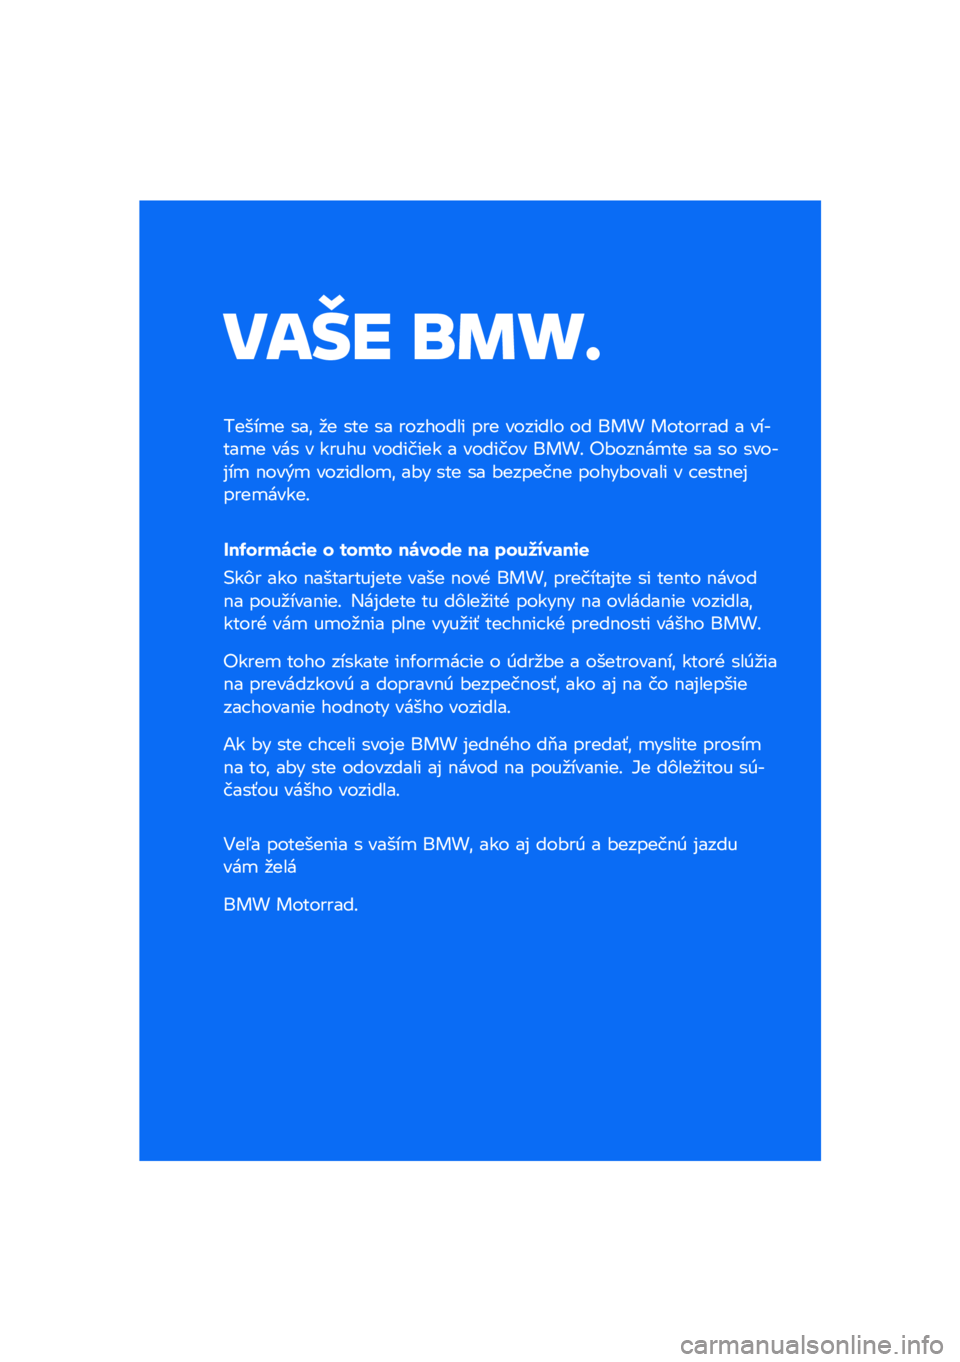 BMW MOTORRAD R NINE T SCRAMBLER 2020  Návod na používanie (in Slovak) ���� �\b�	�
�
�����
� ���\f �
� ��� �� �������� ��� ������� �� ��� �������� � ������
� ��� � ����� �������� � ������� �